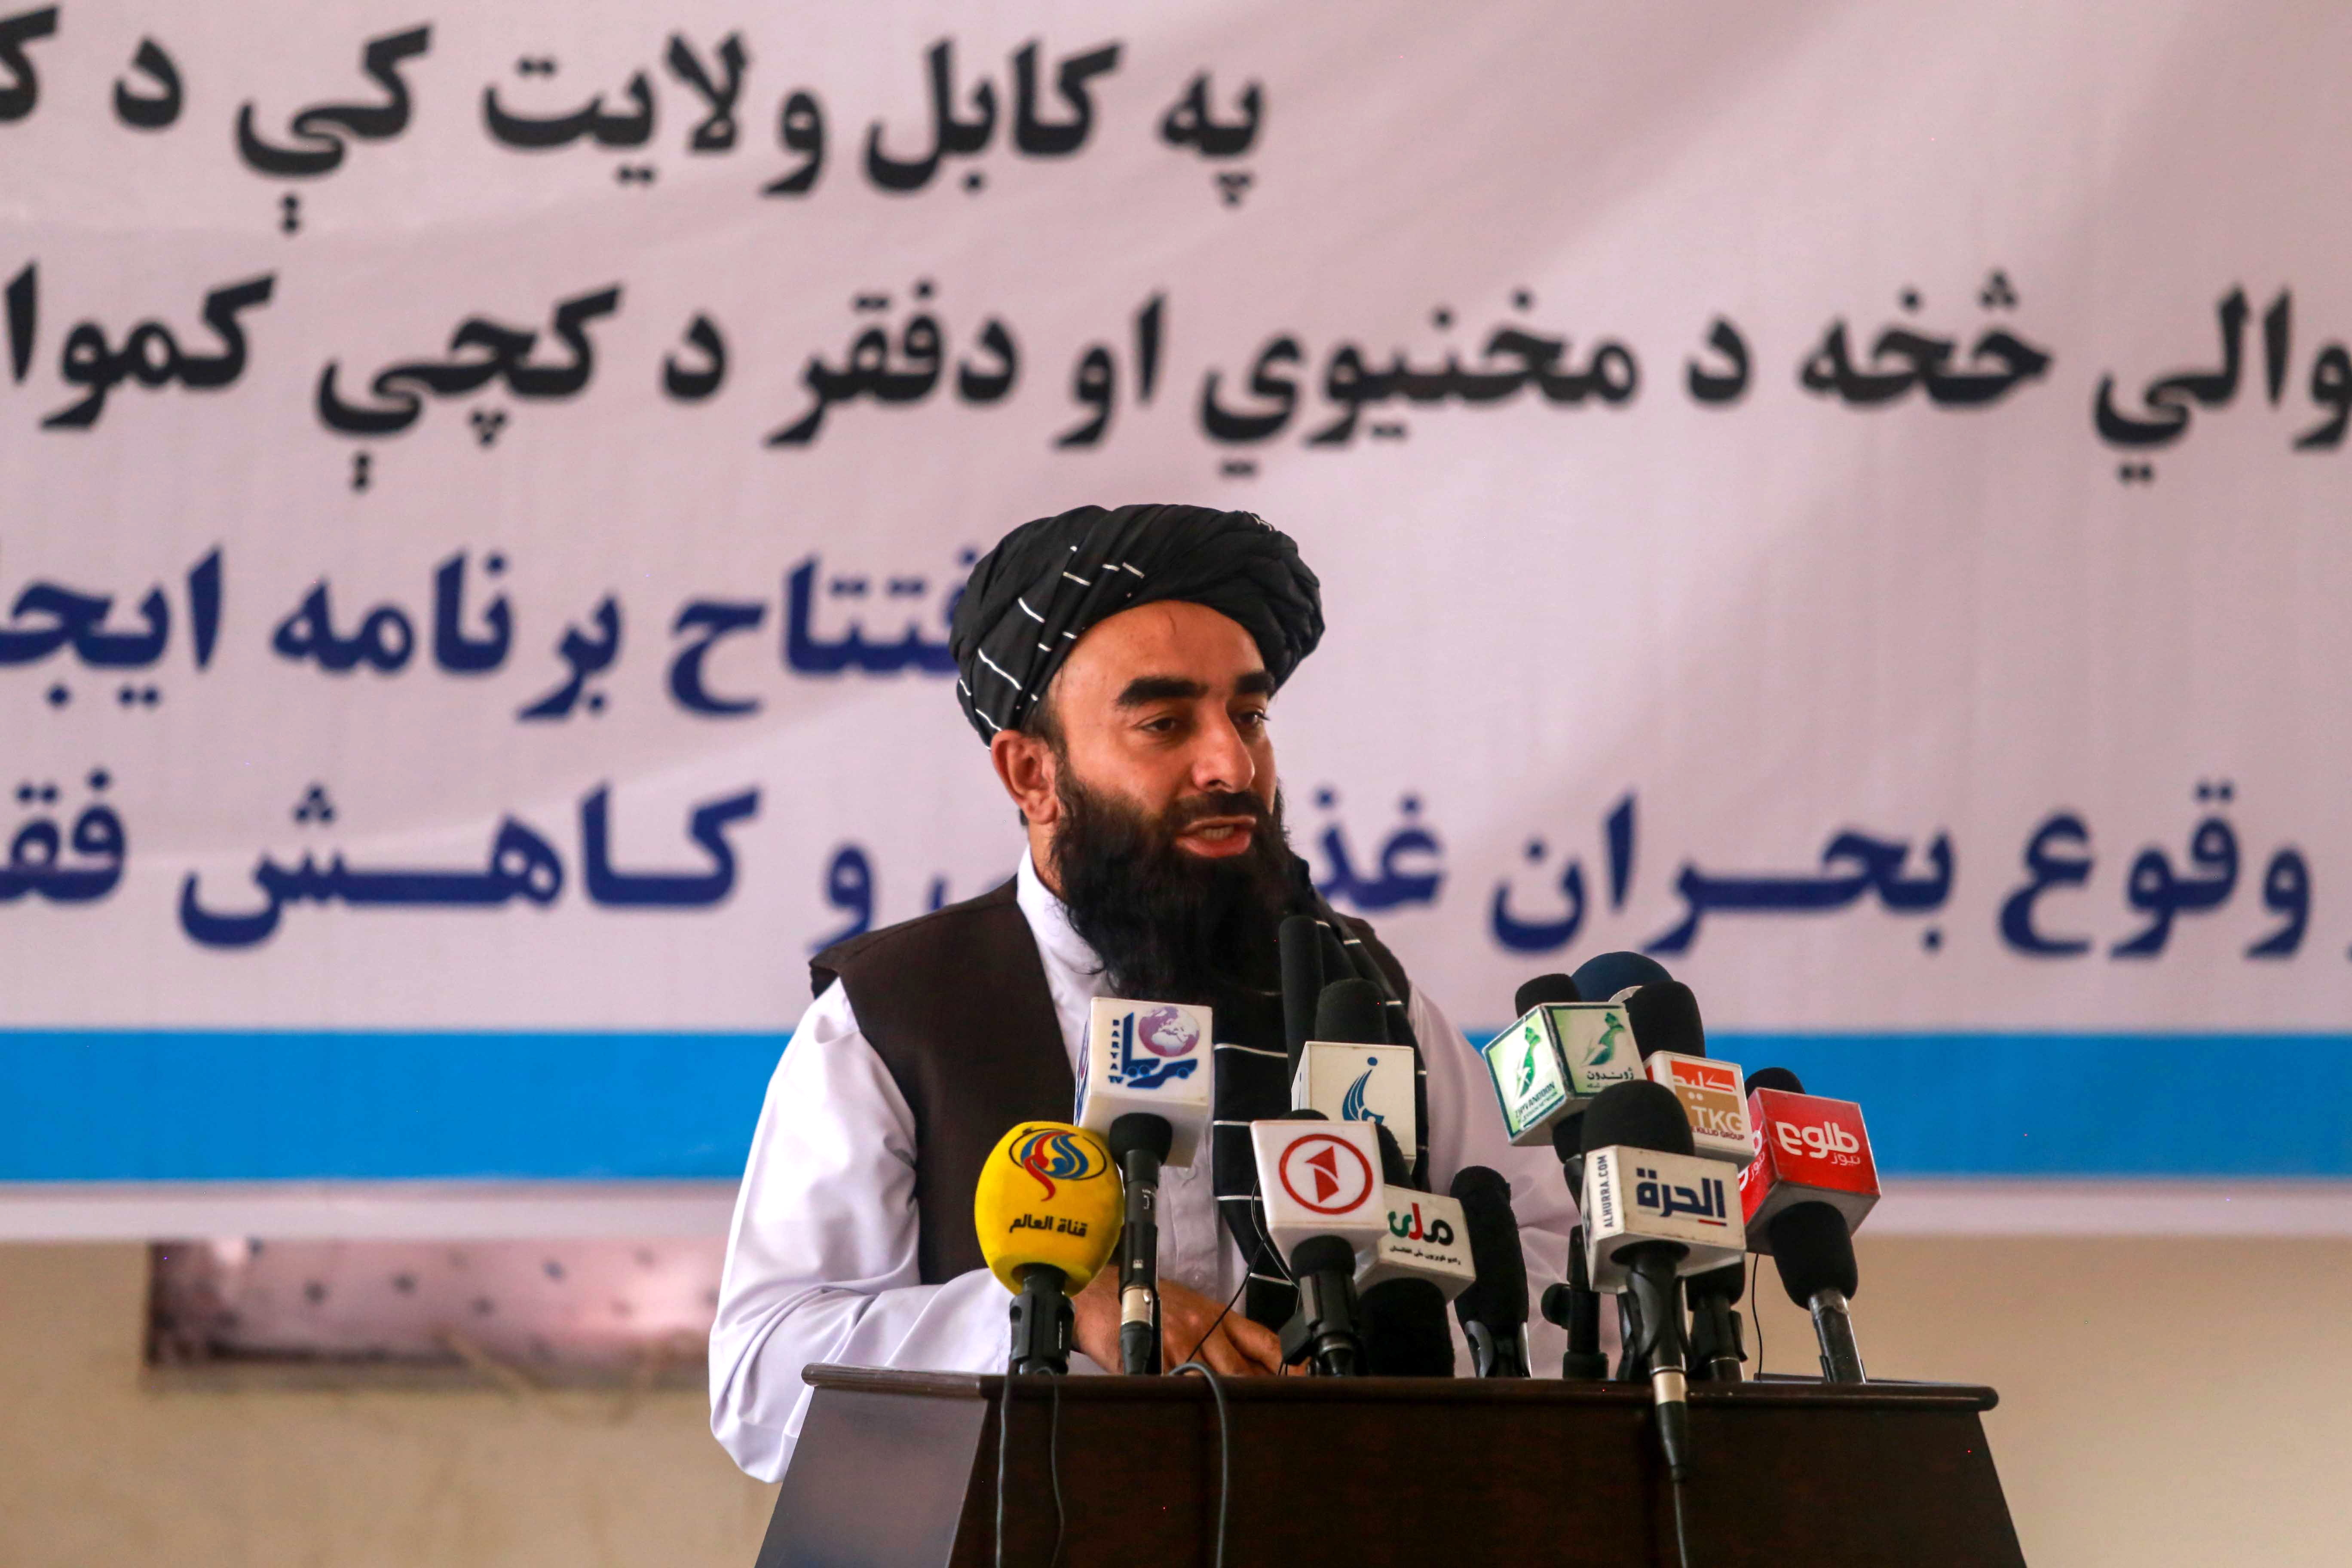 El portavoz del Gobierno talibán afgano, Zabihullah Mujahid, en una imagen de archivo. EFE/EPA/STRINGER
